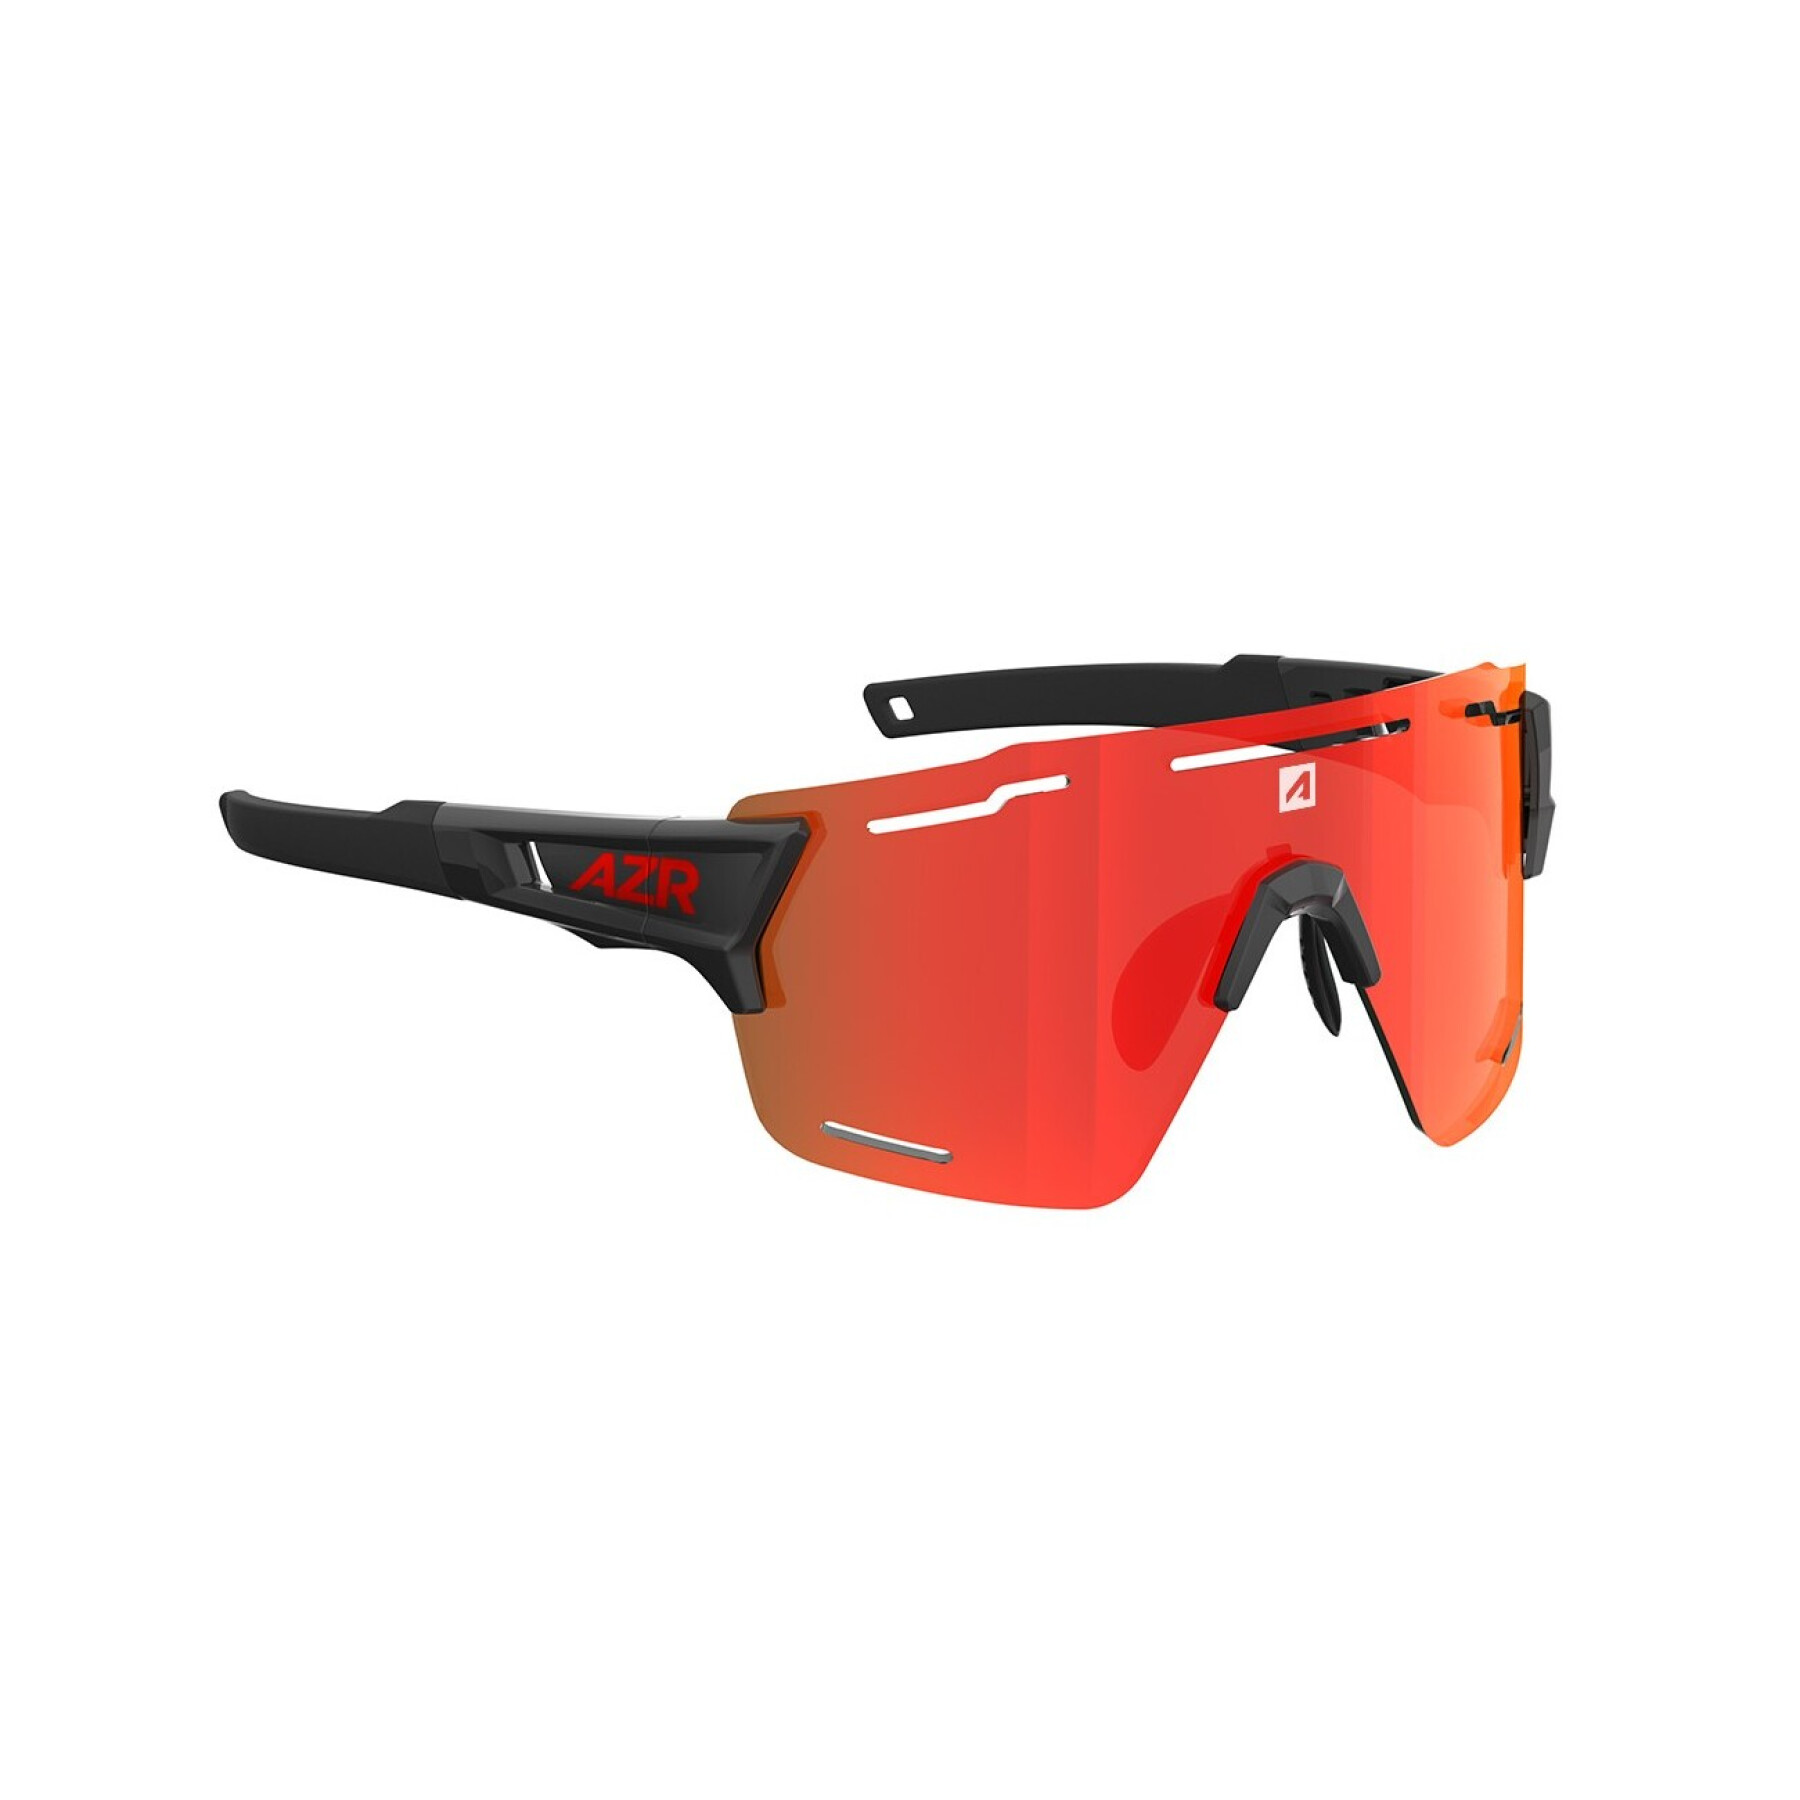 Sunglasses AZR Pro Aspin 2 RX